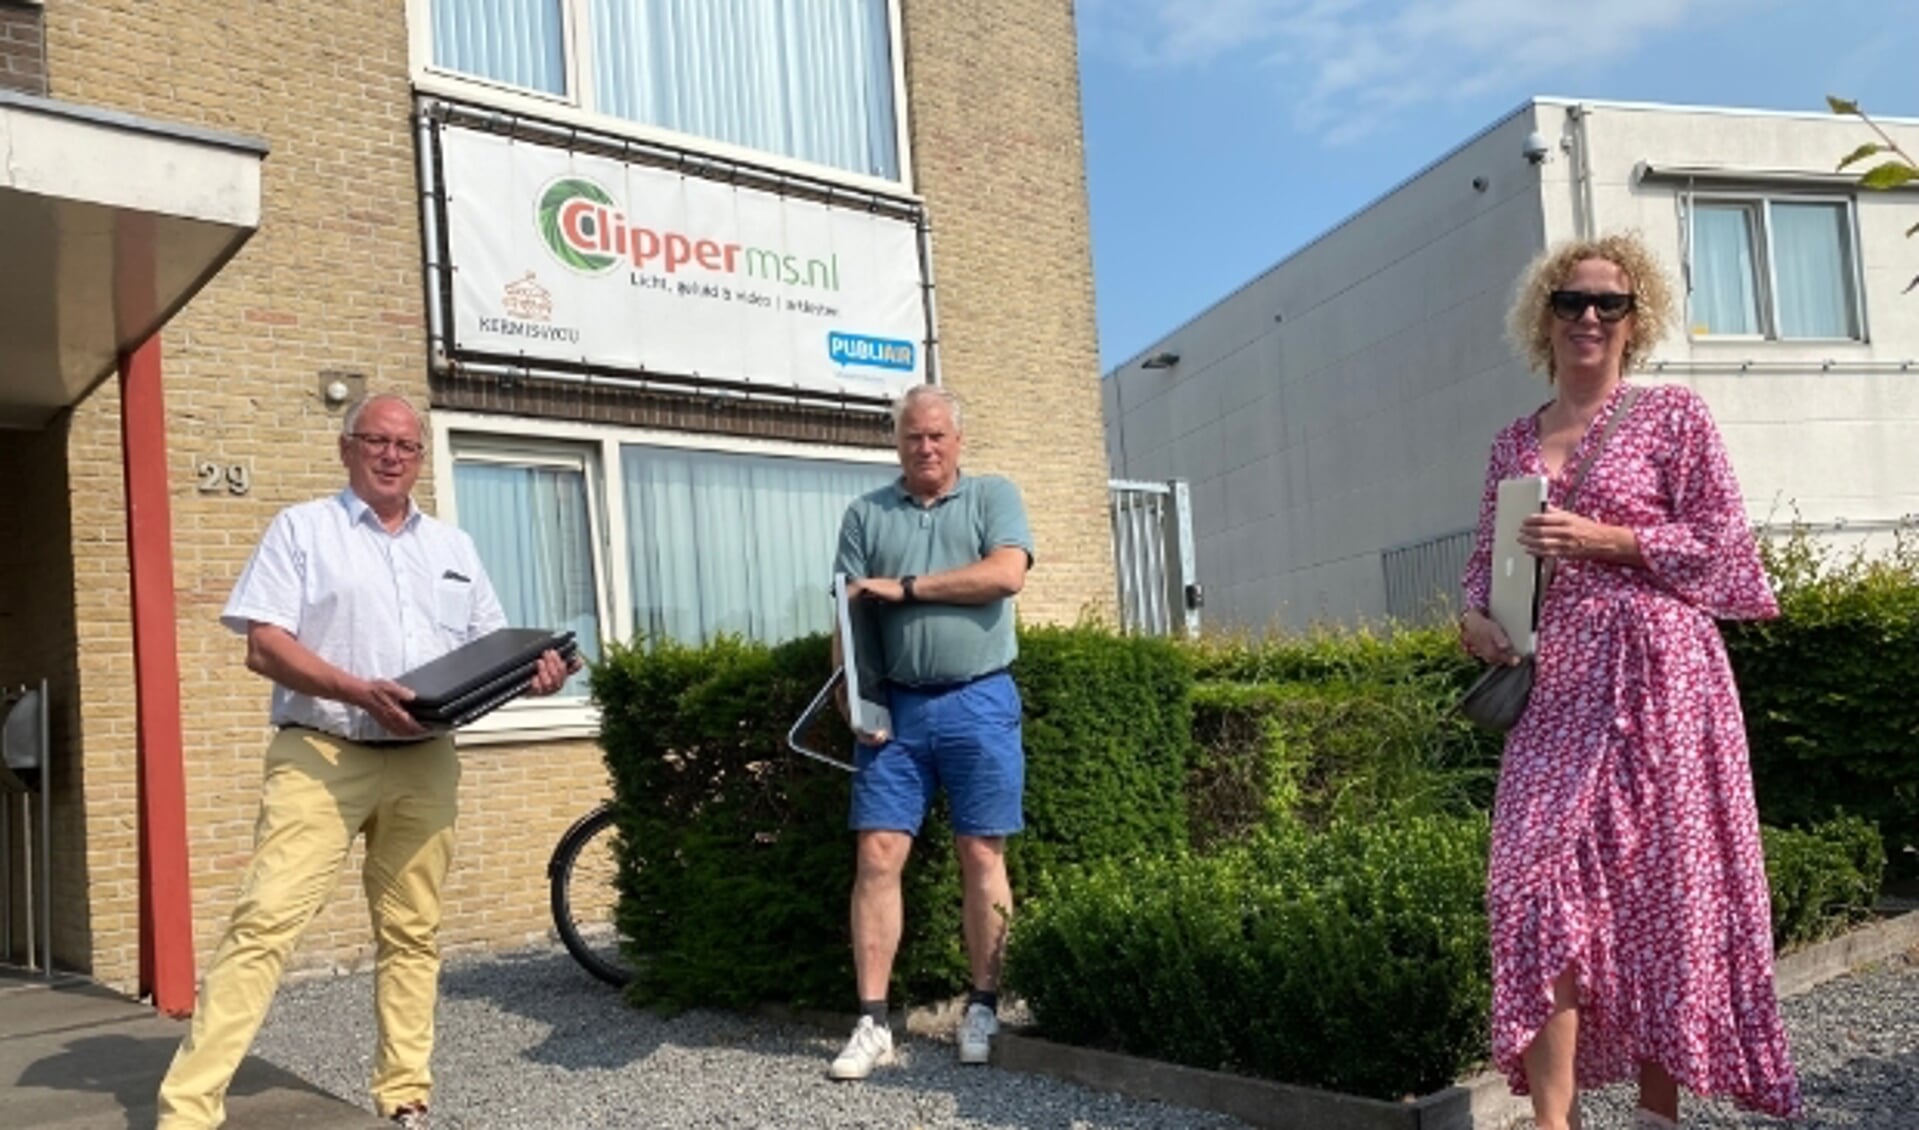 Bestuursleden Ton Kwakkernaat en Carolien Gerritsen van Stichting Leergeld Het Groene Hart nemen laptops in ontvangst bi René den Daas.